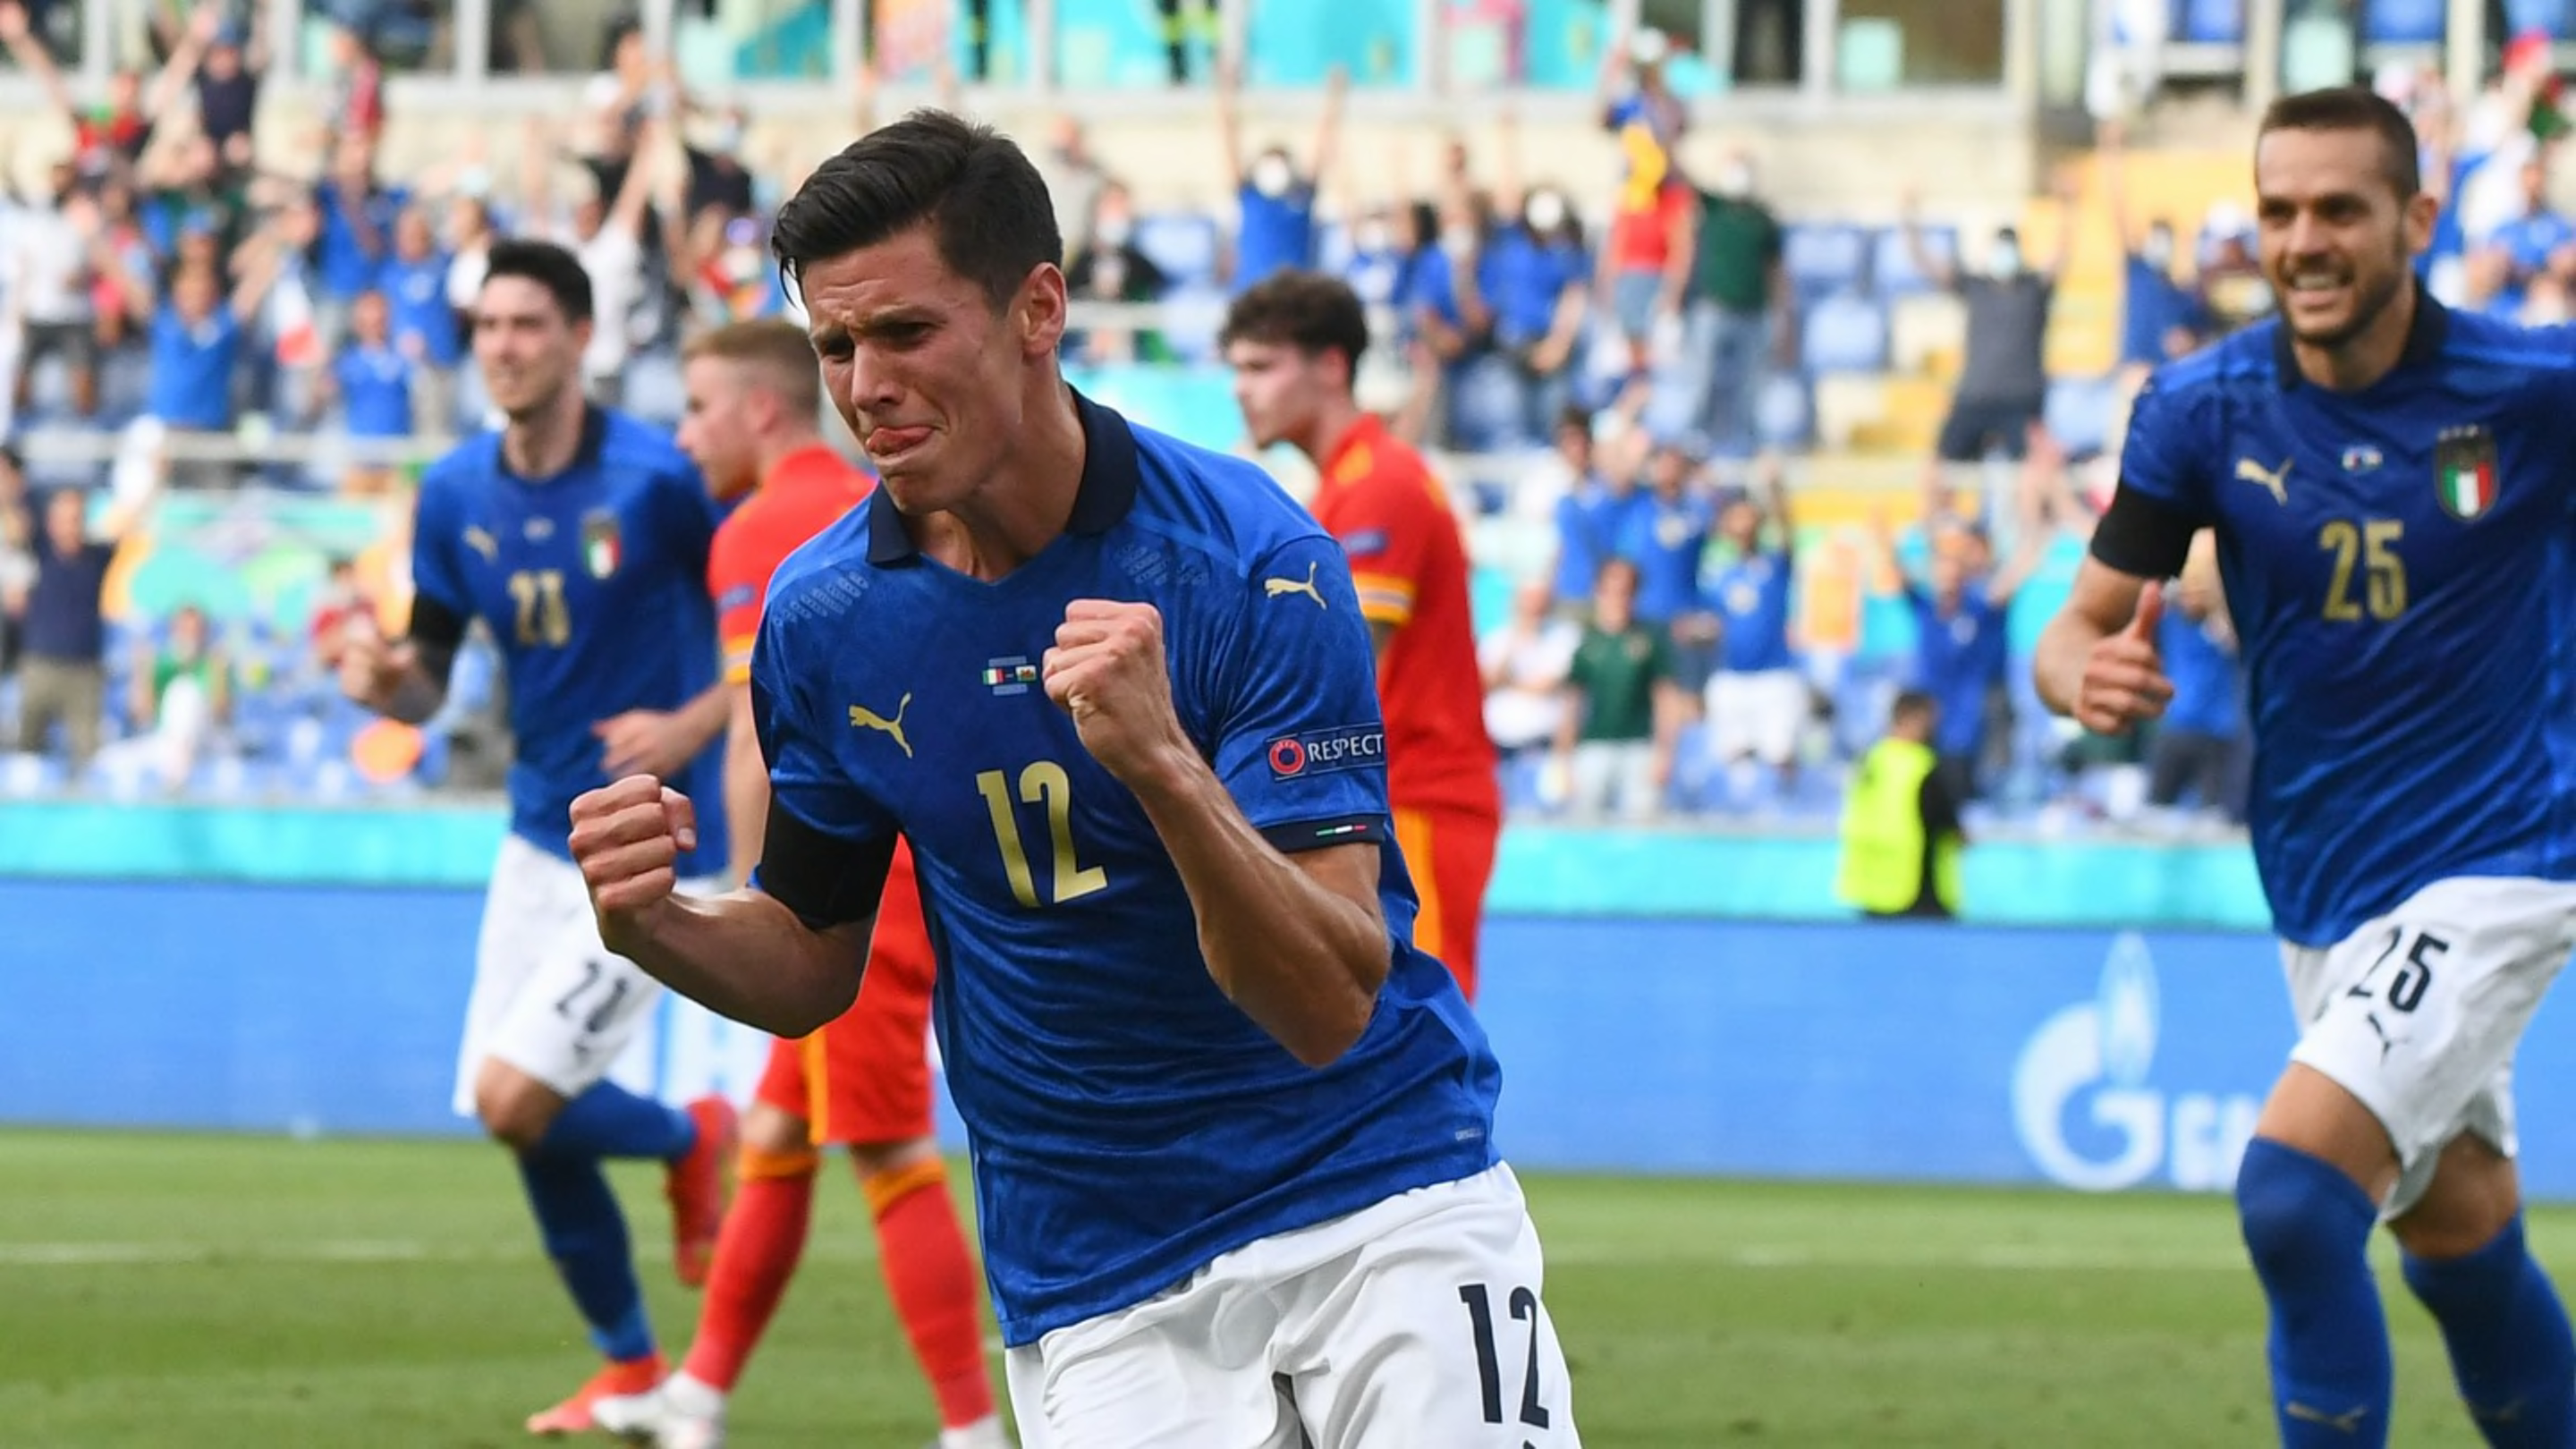 Italie - Autriche : les compositions probables et sur quelle chaîne regarder ce huitième de finale de l'Euro 2020